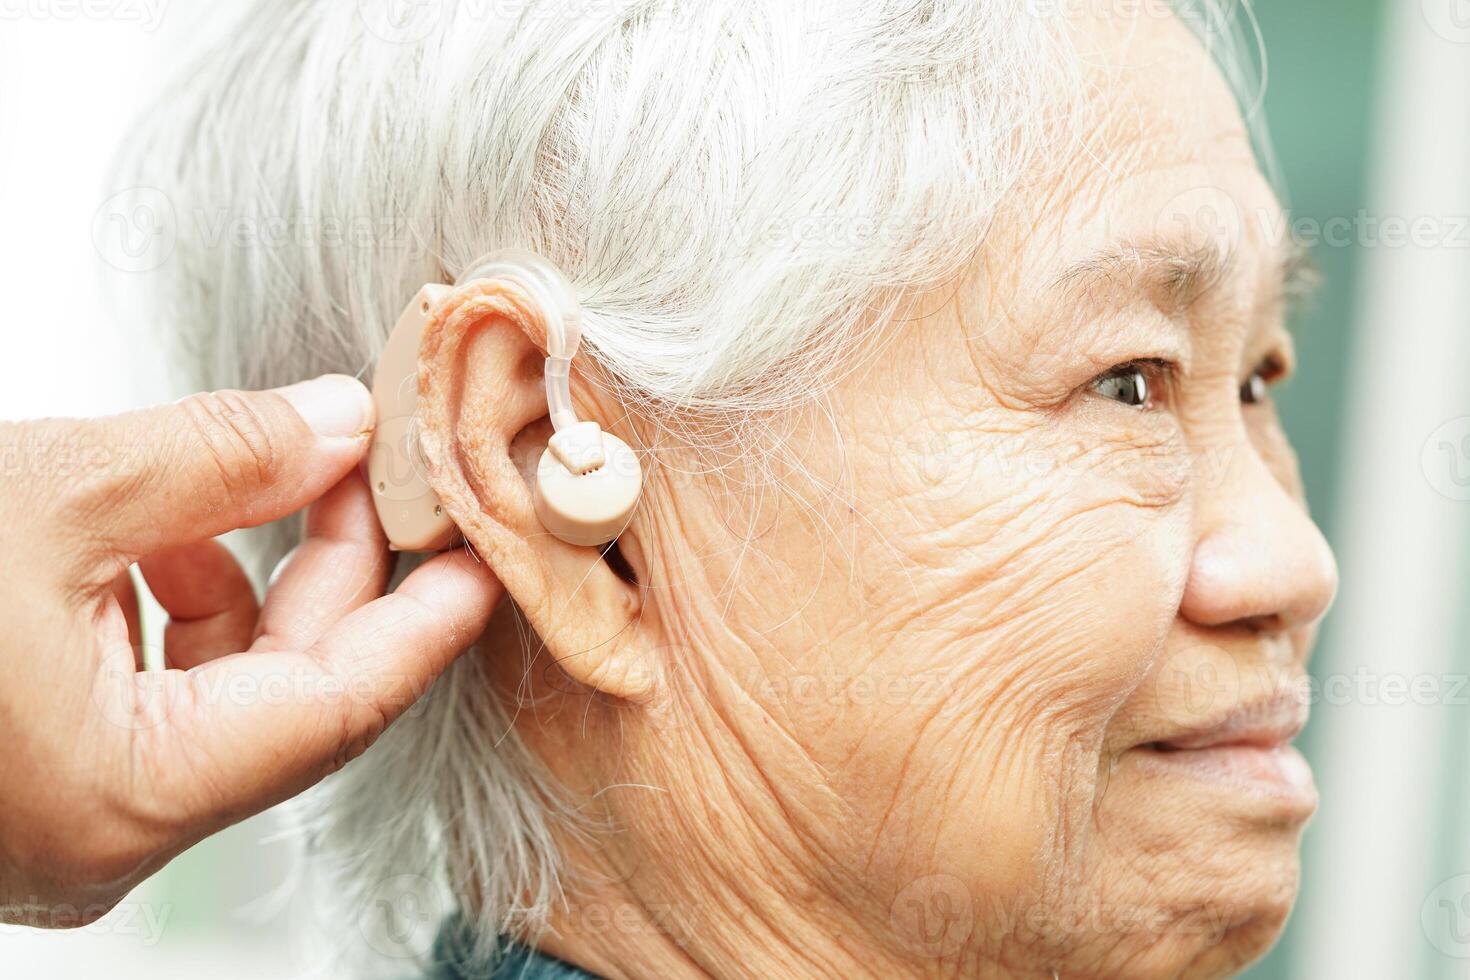 medico installare udito aiuto su anziano paziente orecchio per ridurre udito perdita problema. foto